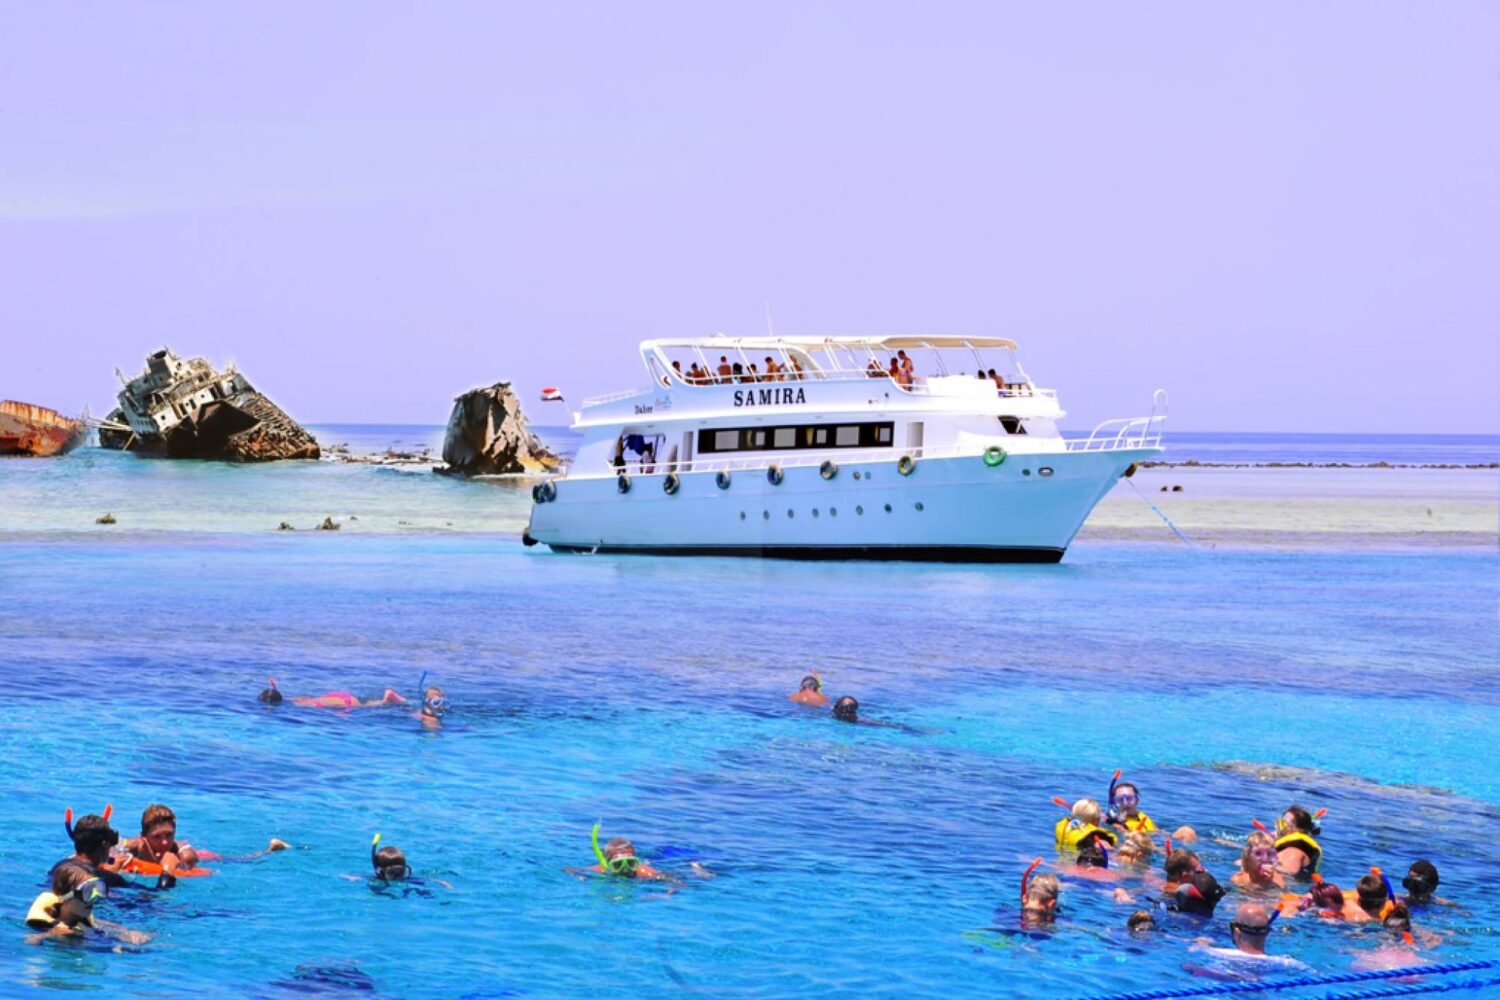 Tiran Island in Sharm El Sheikh.